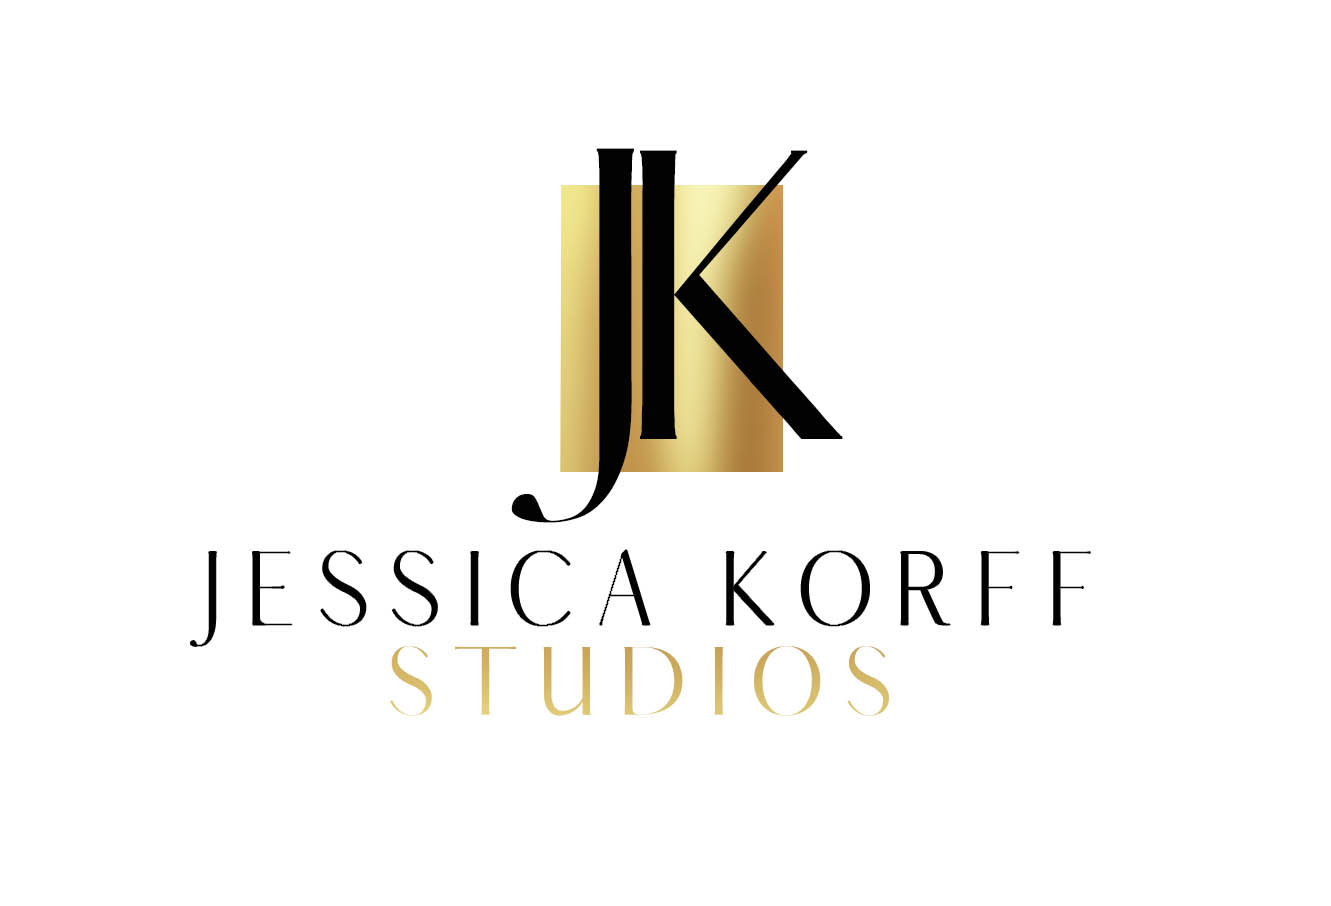 Jessica Korff Studios